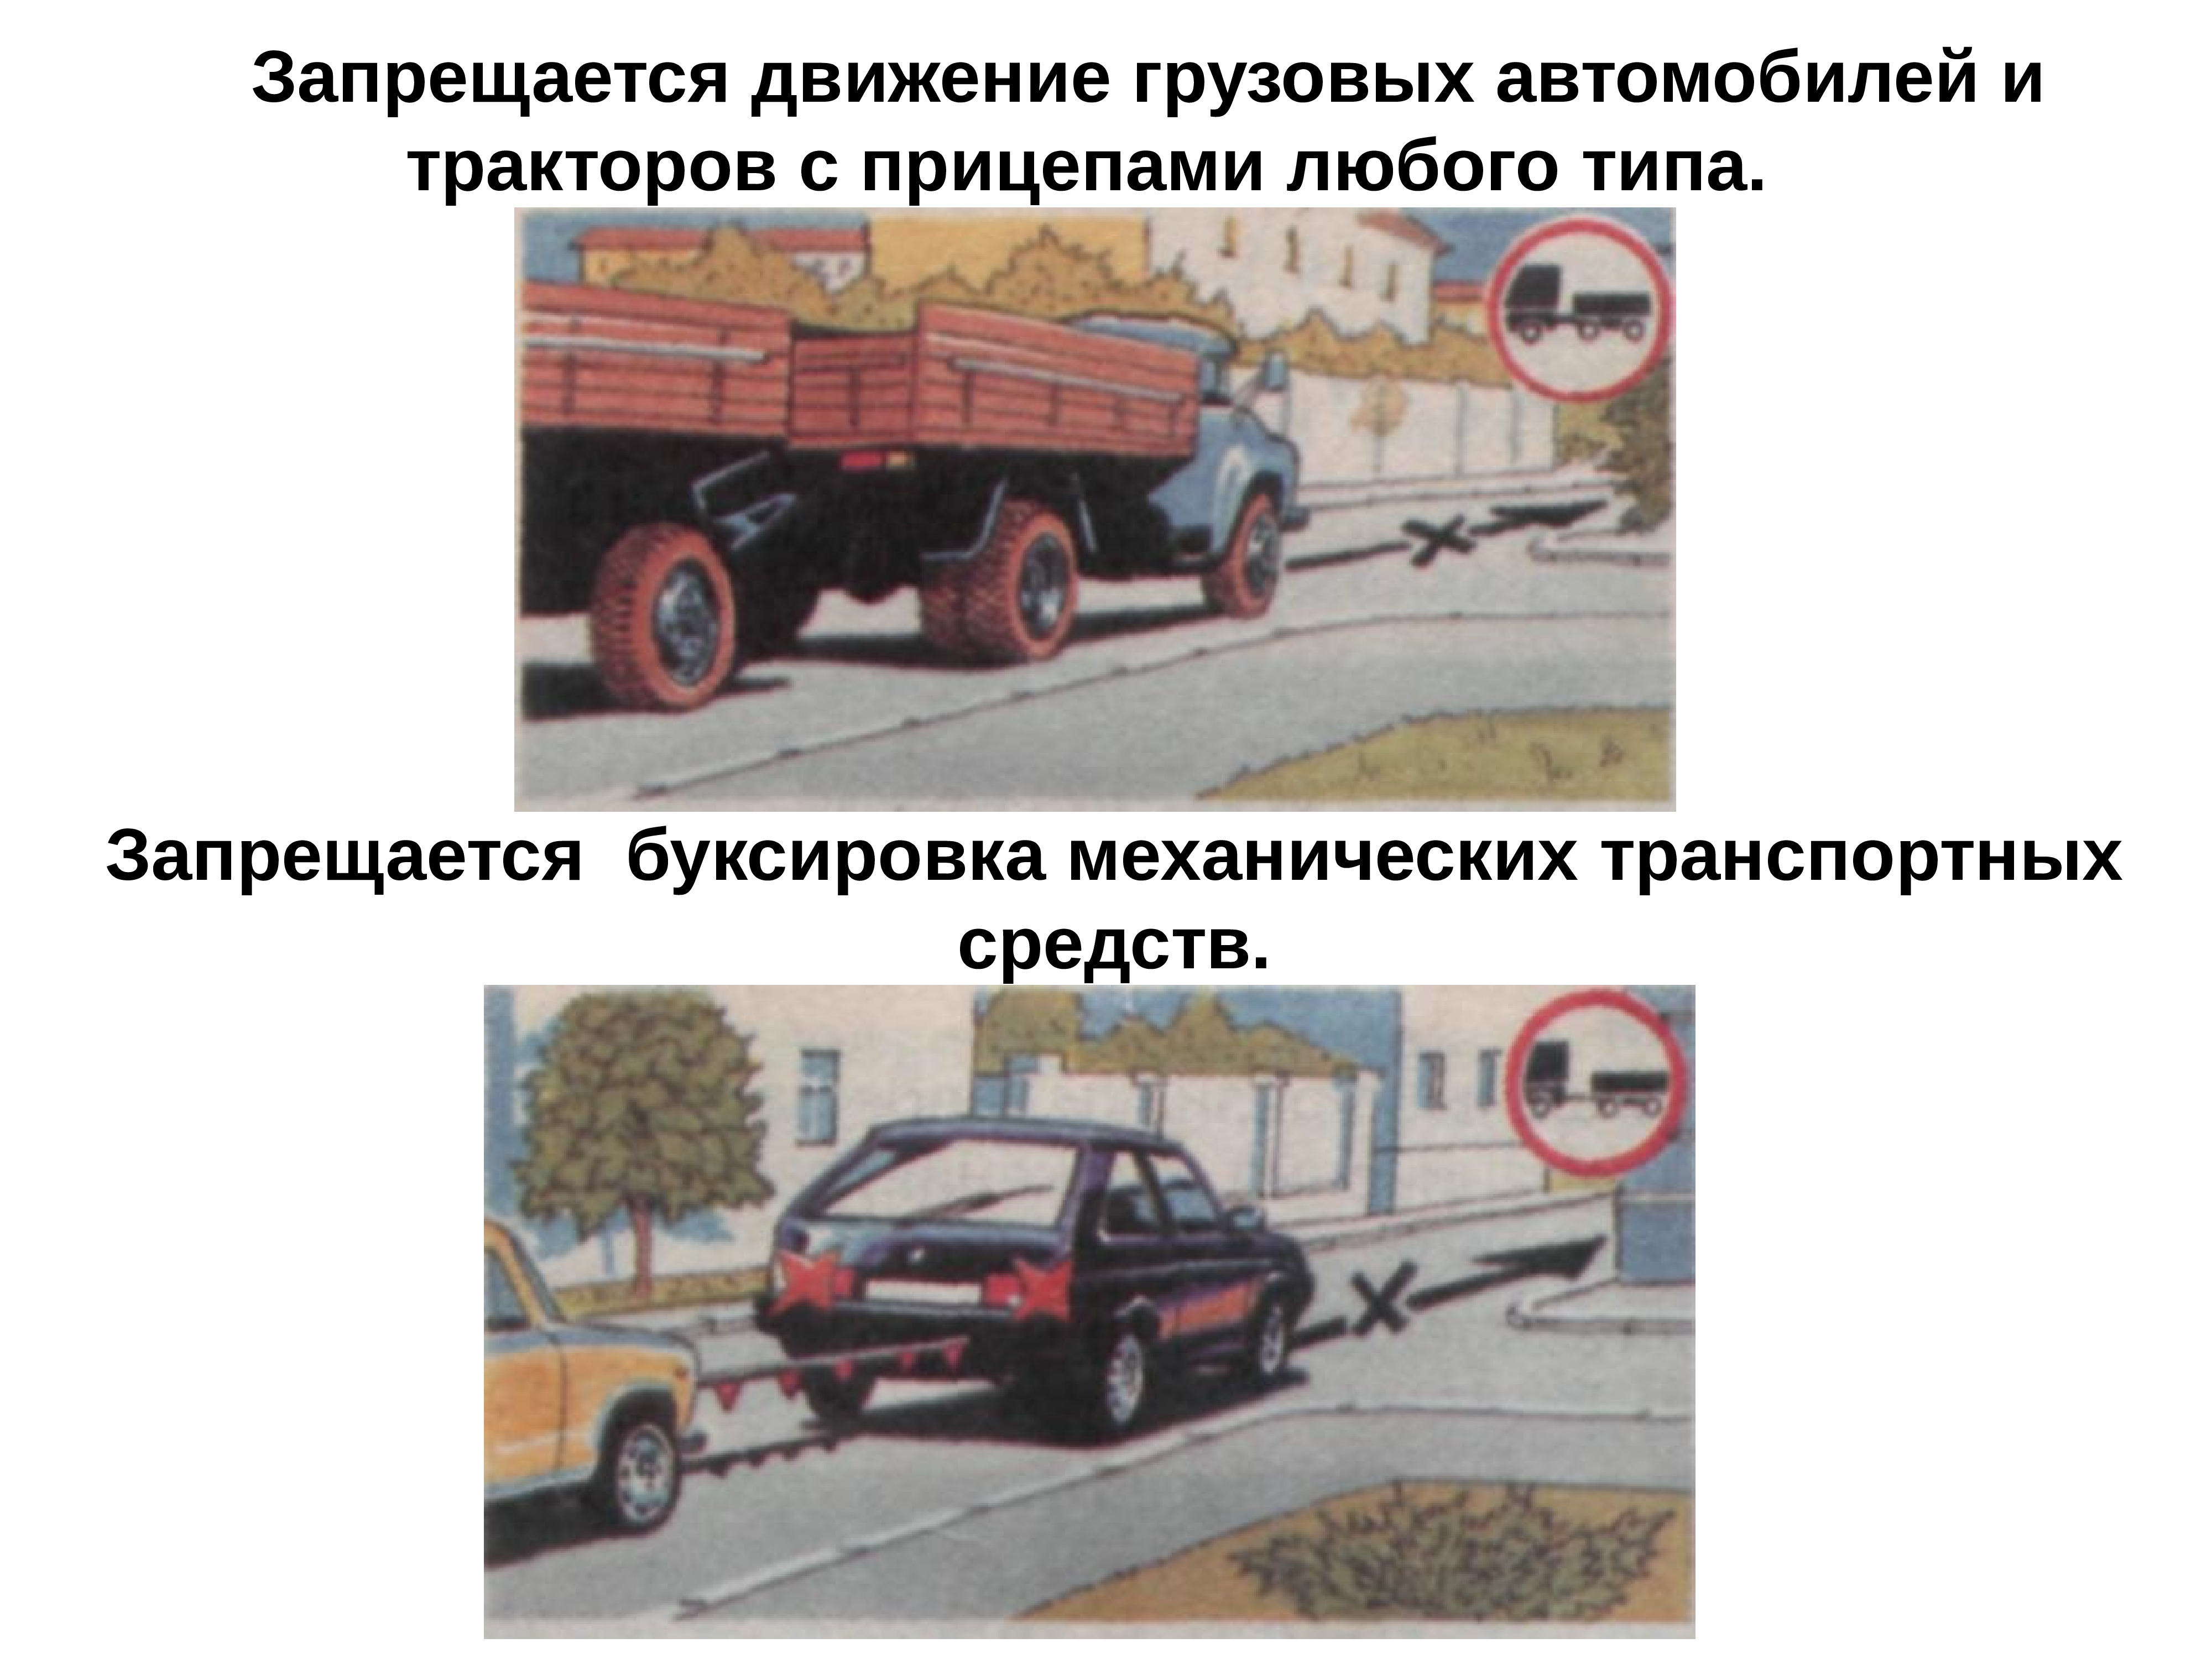 Средствами передвижениями являются. Знак 3.7 движение с прицепом. 3.7 «Движение с прицепом запрещено. Буксировка транспортных средств. Запрещается движение грузовых автомобилей и тракторов.